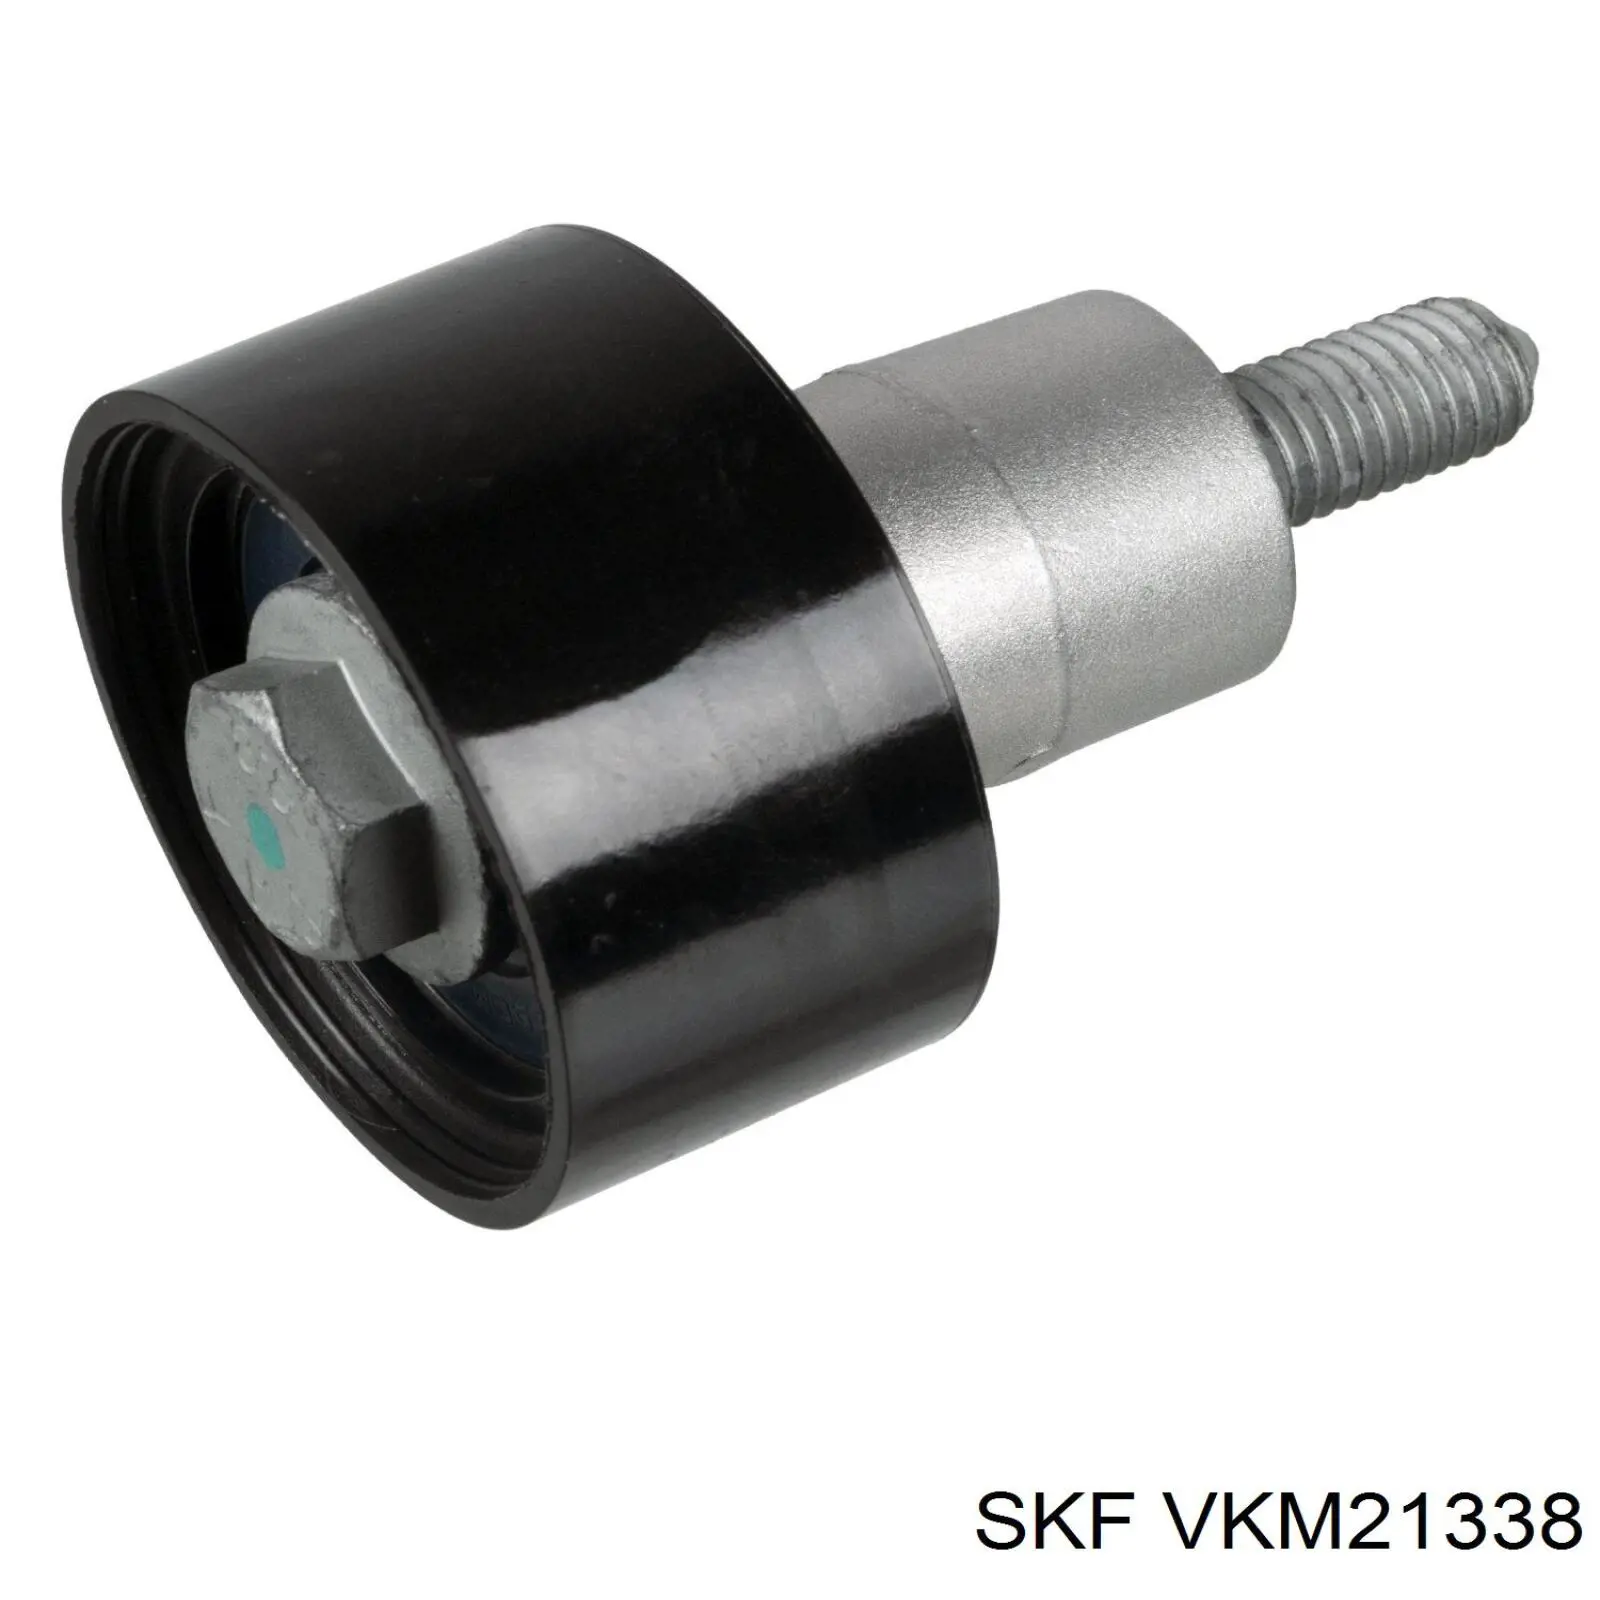 VKM 21338 SKF rodillo intermedio de correa dentada